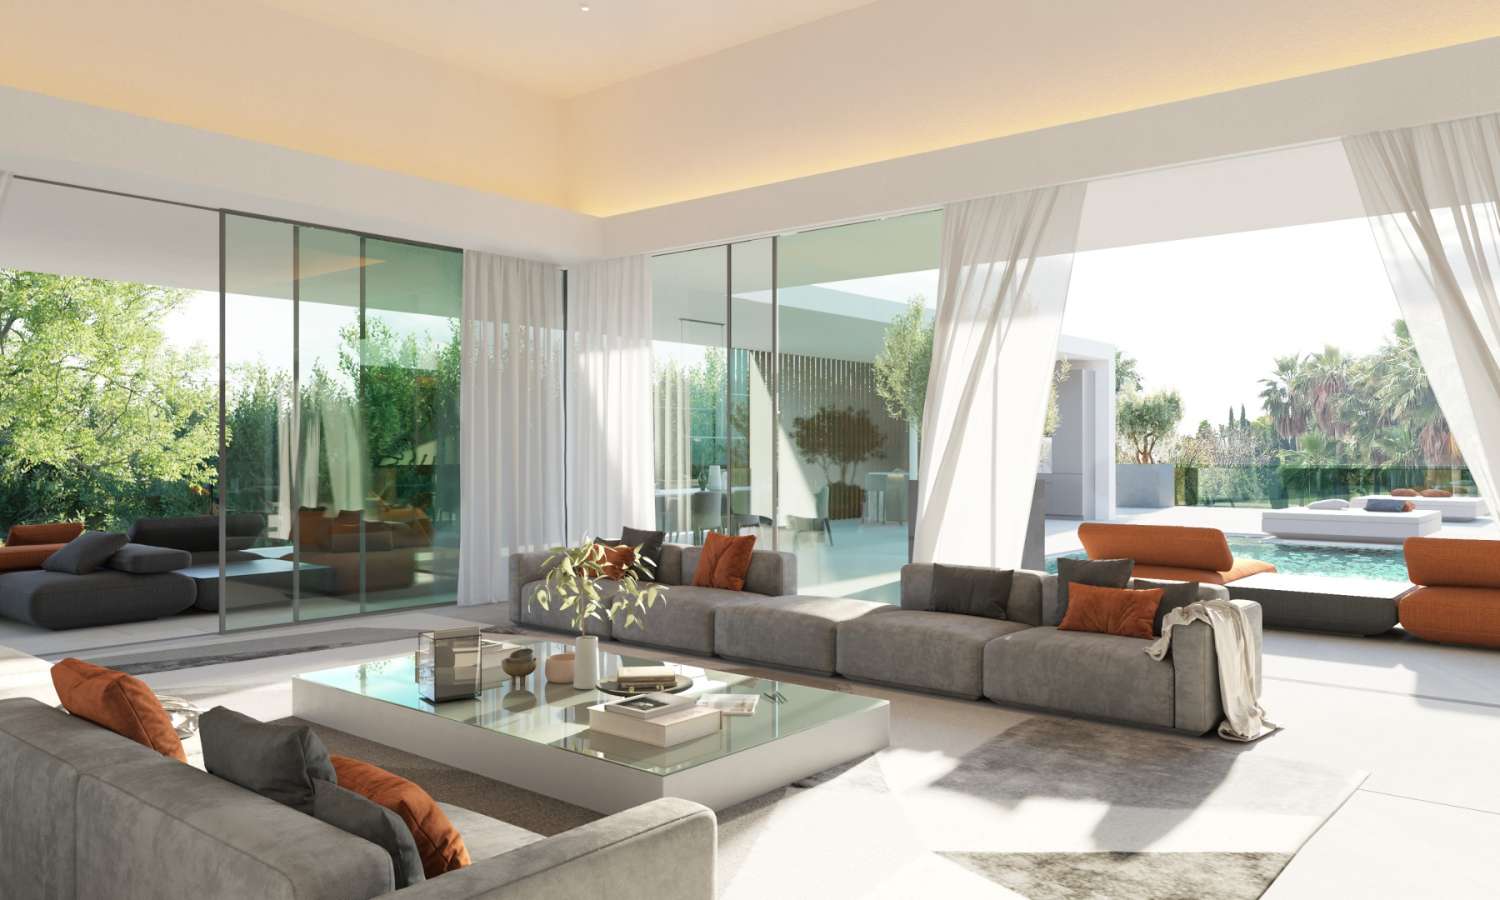 Villa de diseño vanguardista con las mejores calidades y servicio de conserjería en Resort